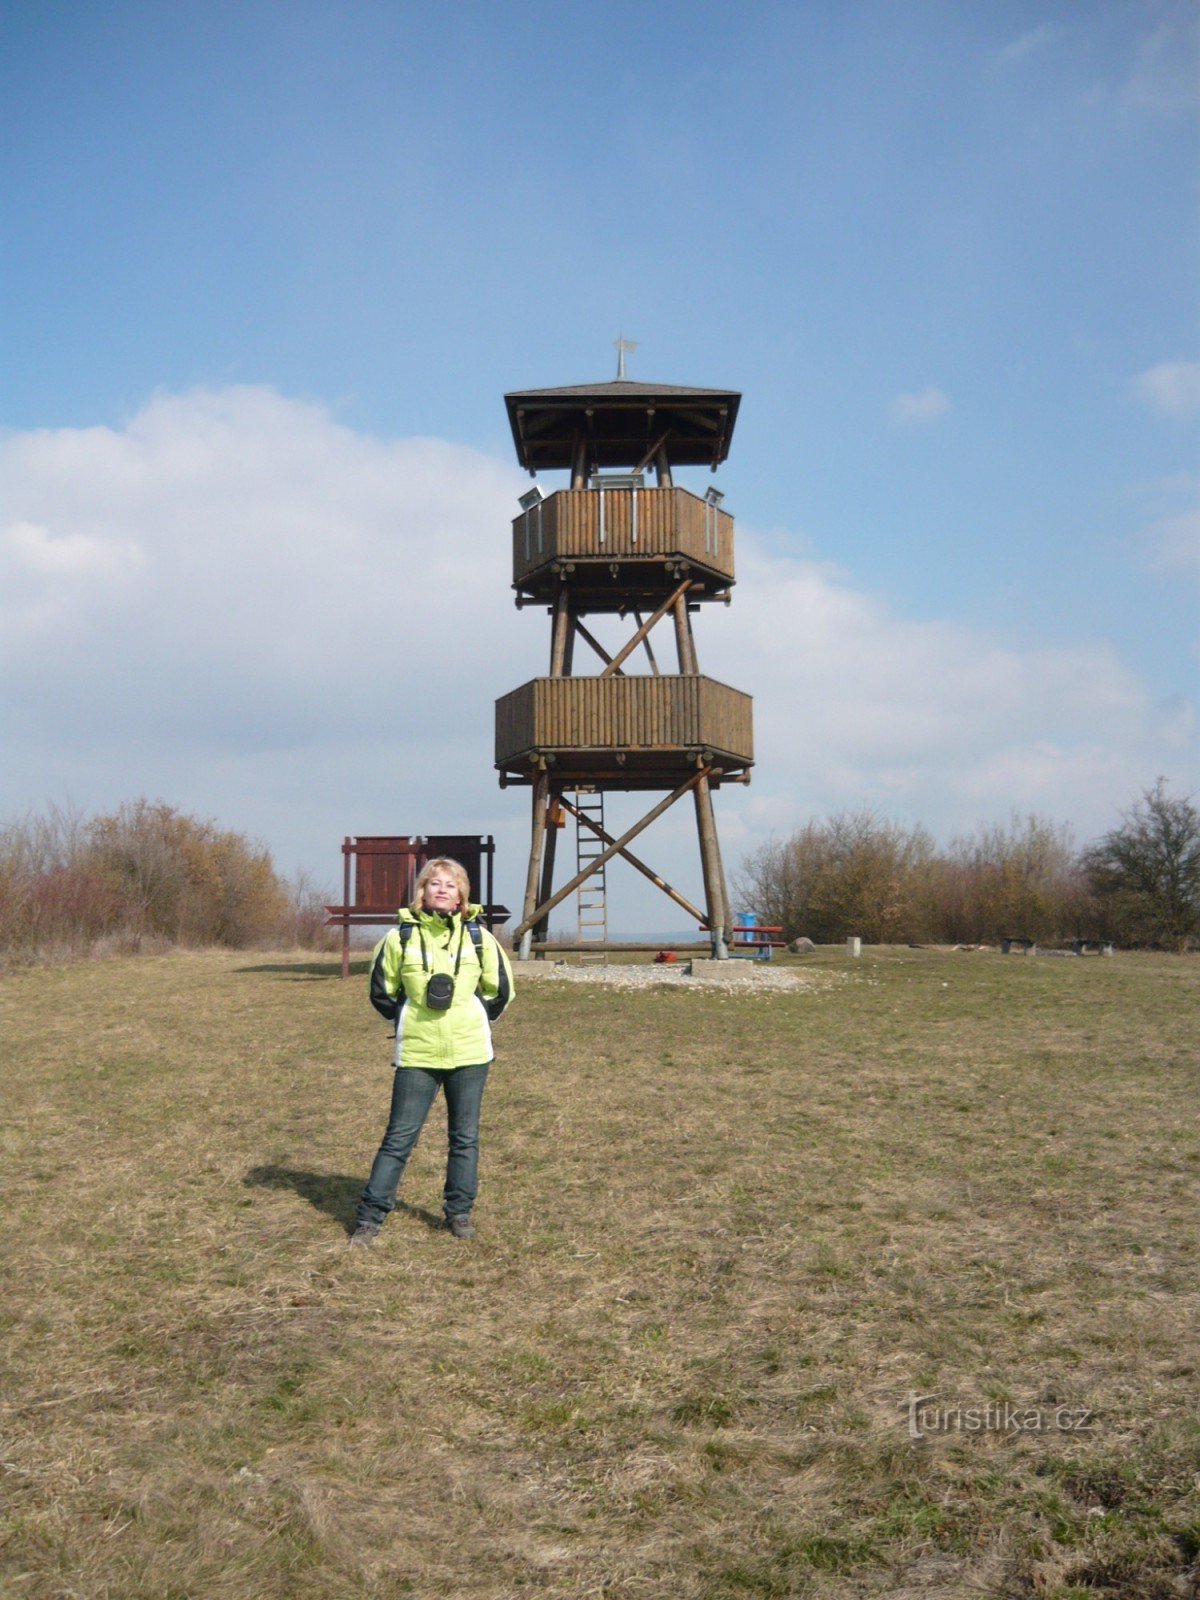 Torre de vigilancia de Malý Chlum